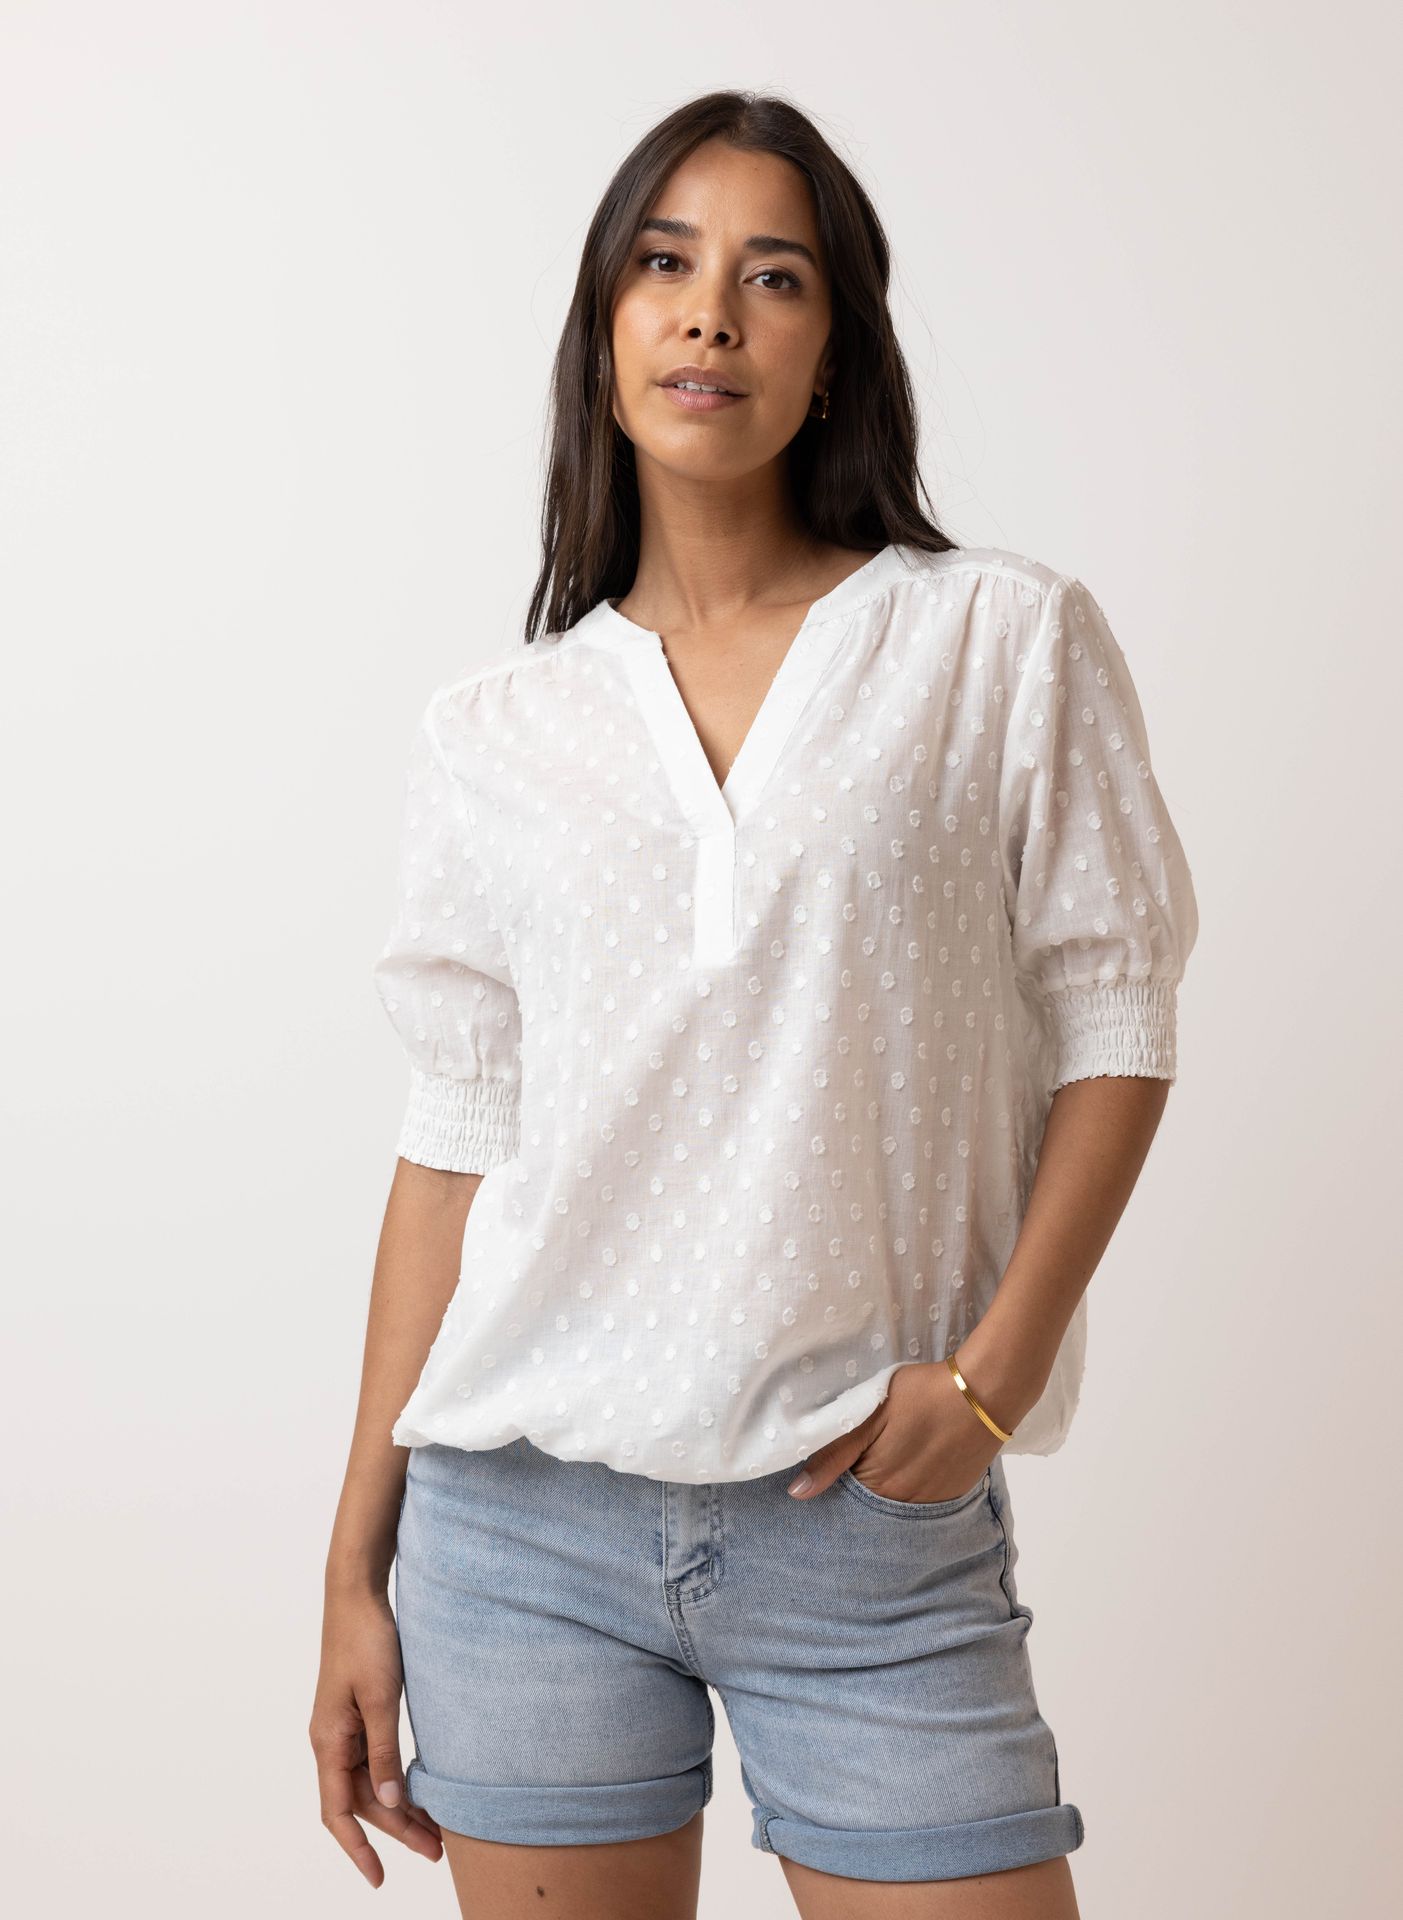 Norah Witte blouse white 213734-100